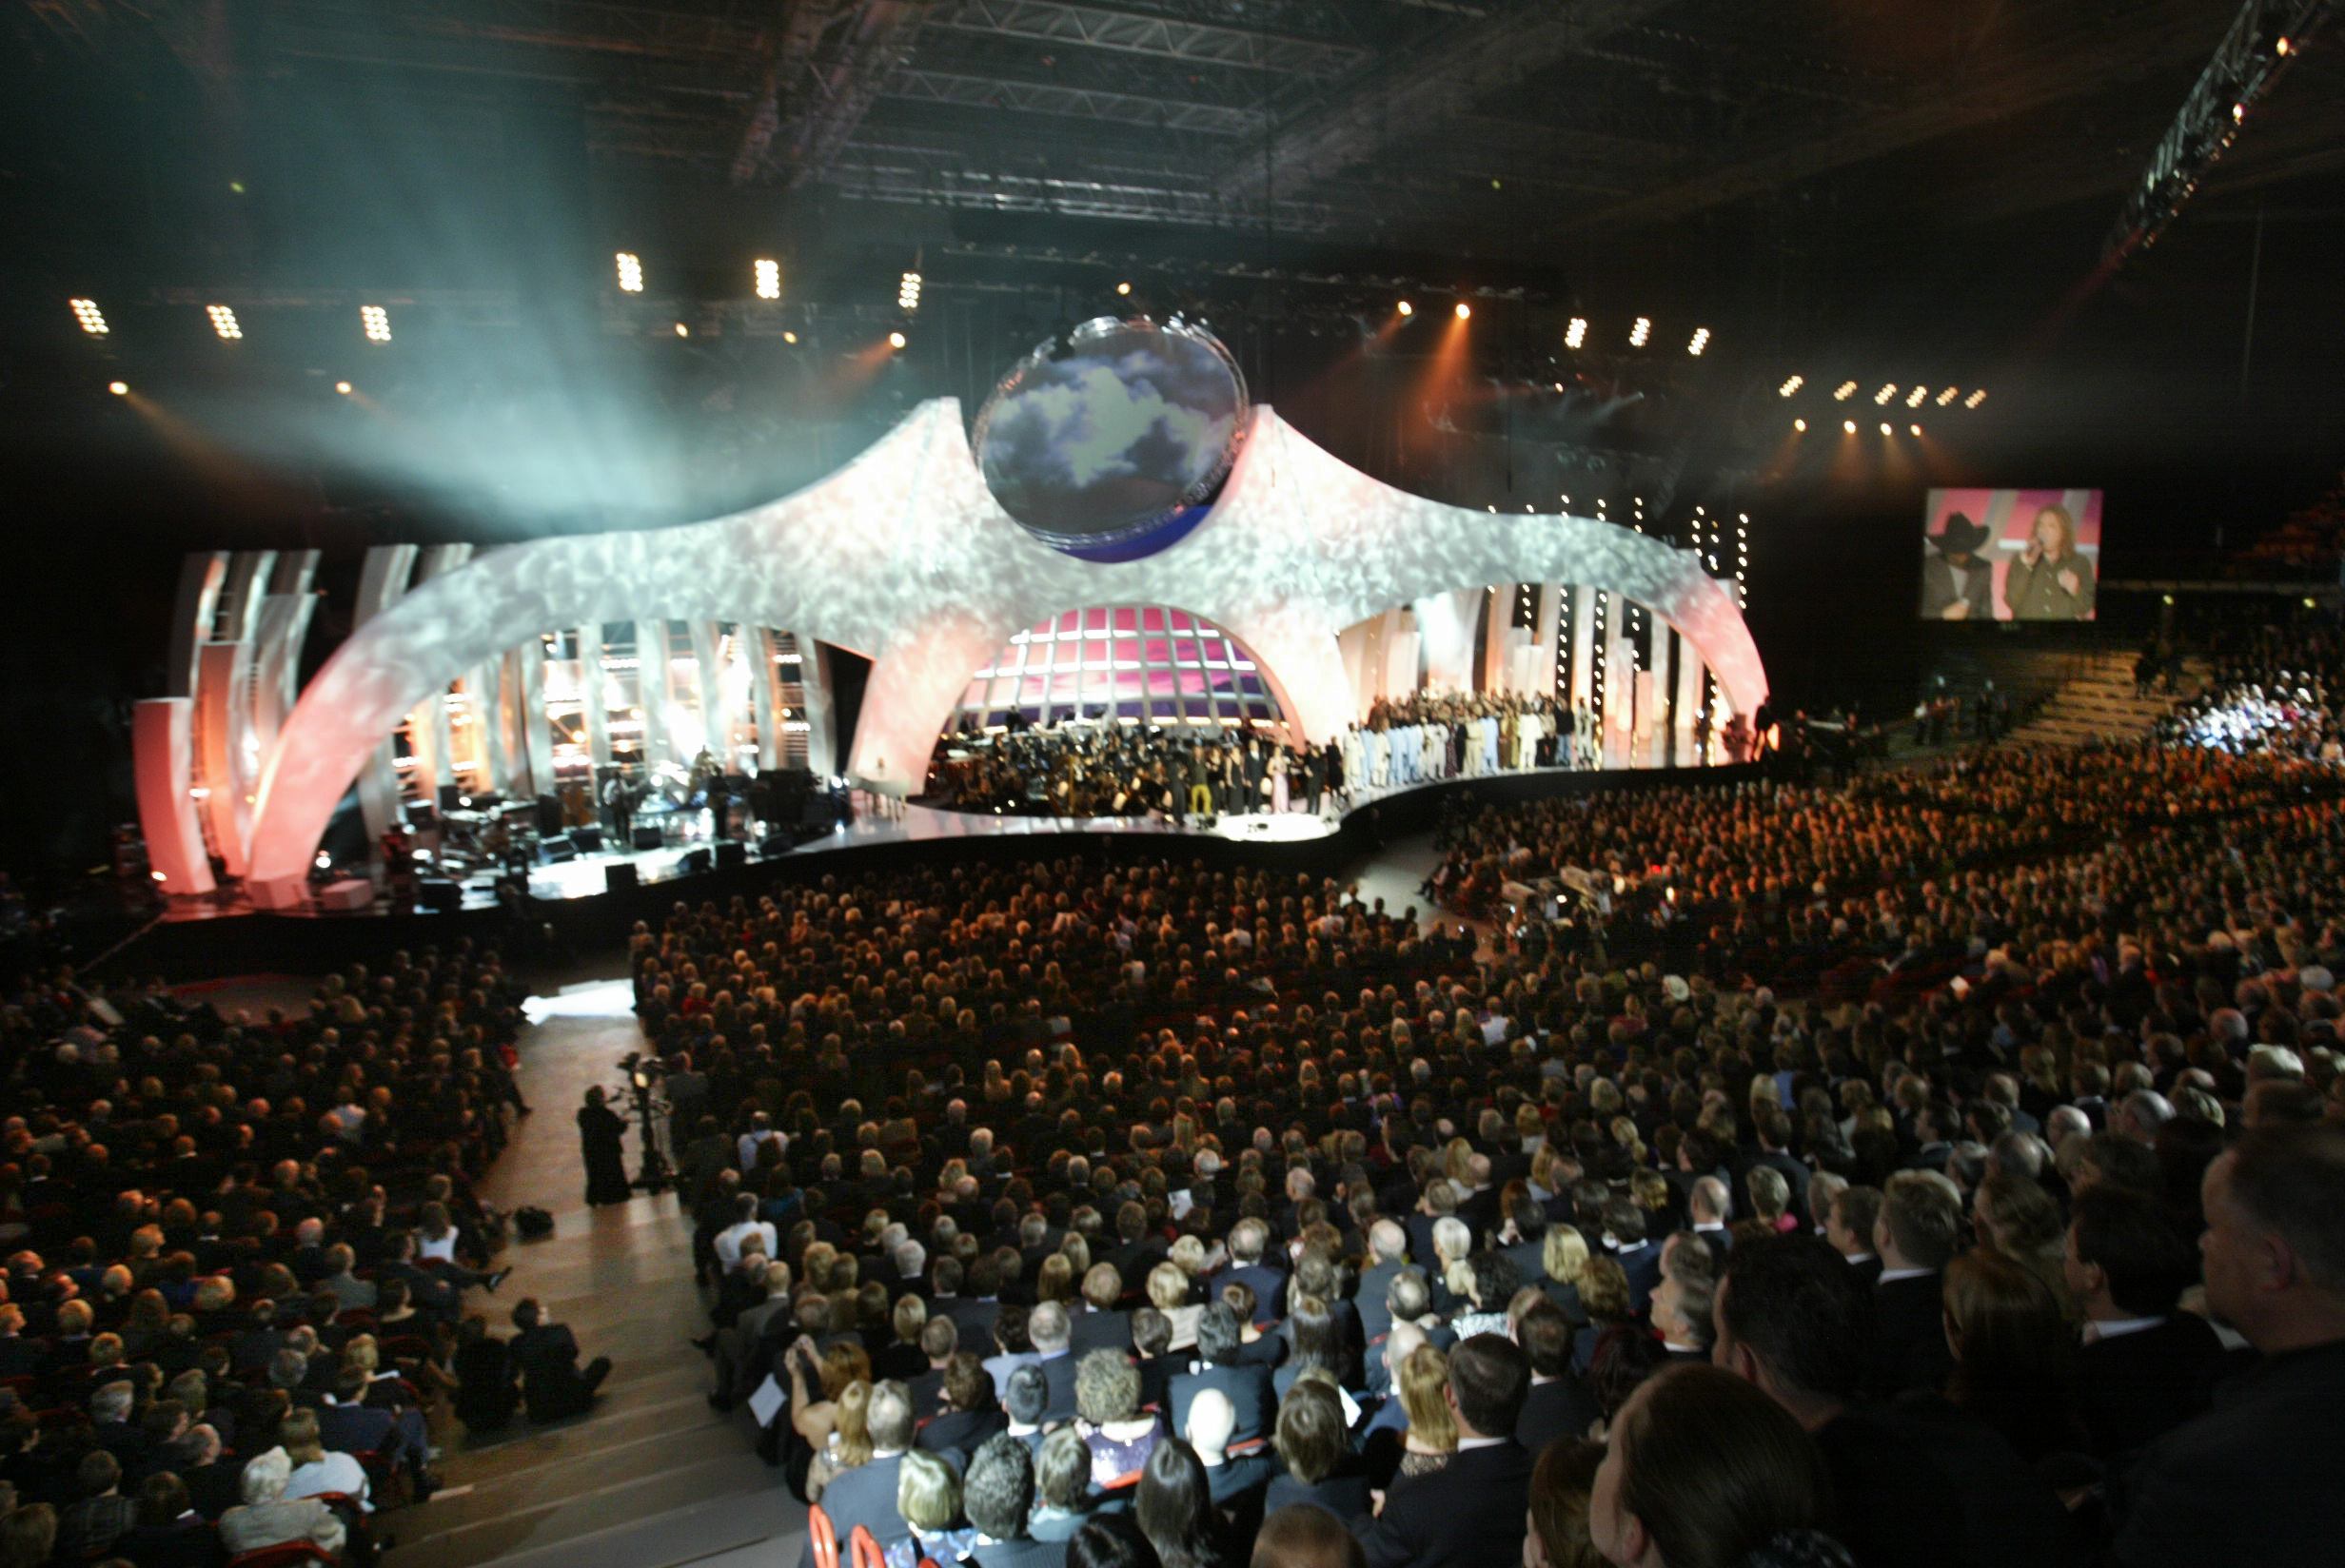 Oslo Spektrum är en stor inomhusarena där bland annat Eurovision Song Contest hölls. 